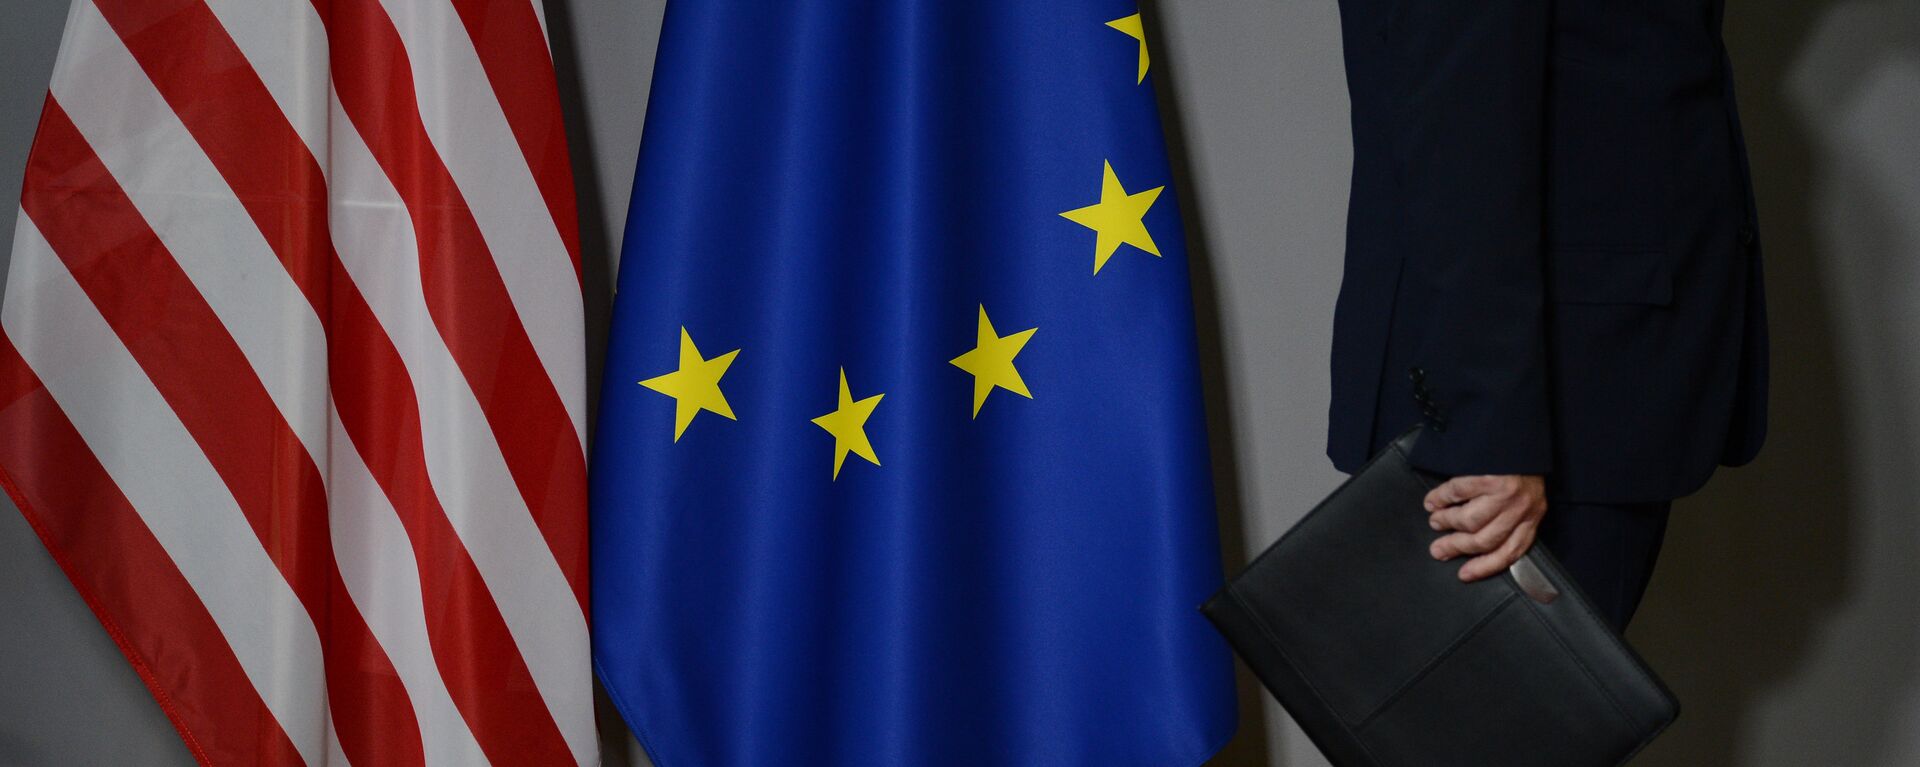 Флаги США и Европейского совета в Брюсселе - Sputnik Latvija, 1920, 19.03.2021